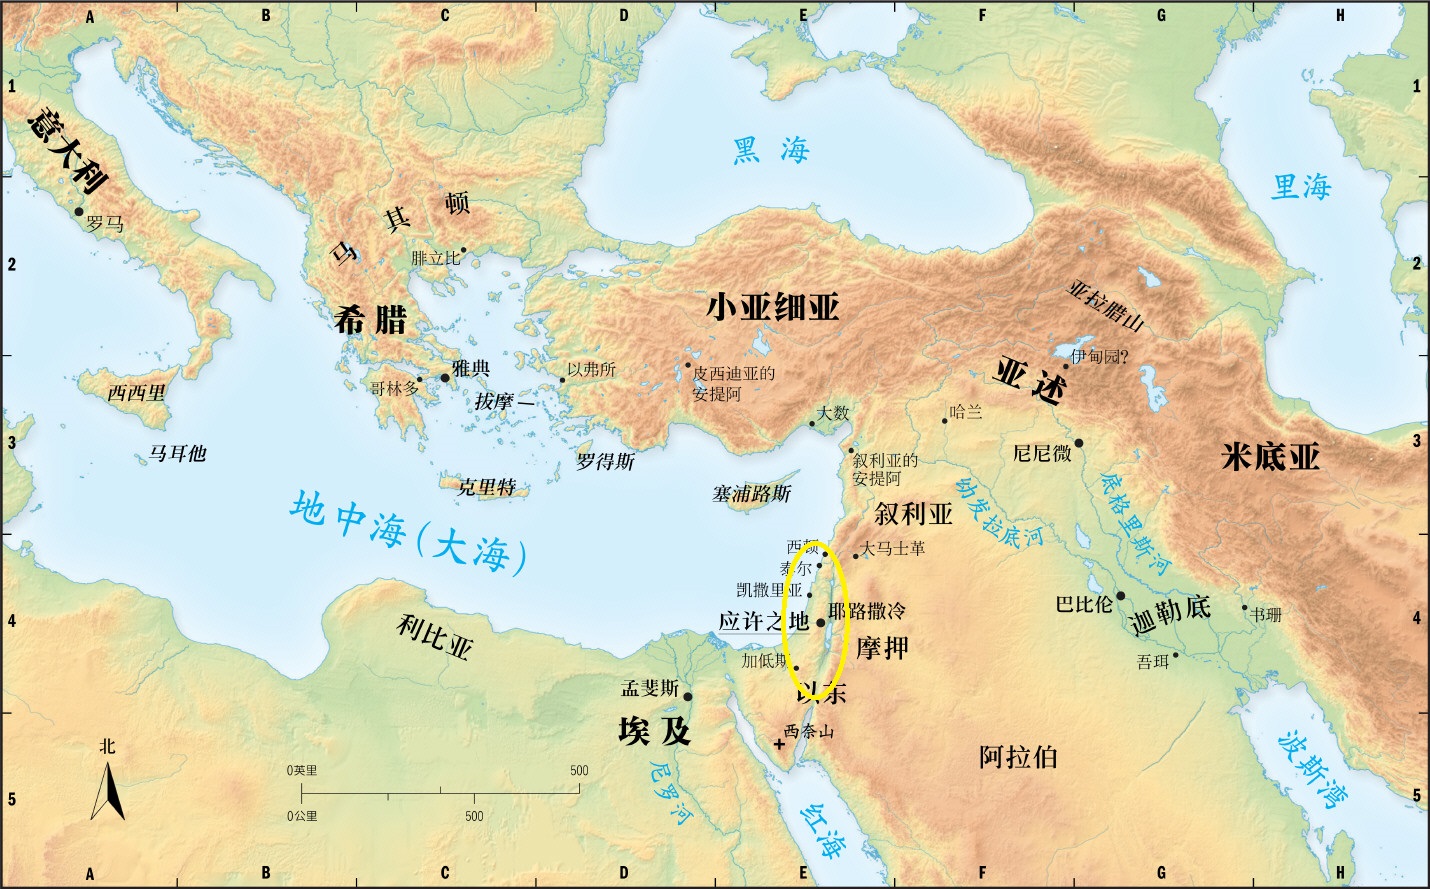 上图：应许之地位于「世界的十字路口」。「迦南地」位于各大文明古国的中间，周围陆续崛起的帝国包括东方的亚述、巴比伦、波斯，南方的埃及，北方的亚兰、赫人，西方的希腊、罗马。「迦南地」既是世界各国文化、商业、交通的枢纽，也是各大帝国争霸的必经之地。神把这样一个「世界的十字路口」赐给亚伯兰作应许之地，实在是有非常特别的意义。亚伯拉罕的后裔需要在此向全世界作祭司国度的见证，也需要在此完全仰望神的保守和供应，否则完全不可能在列强的夹缝中得以保存至今。